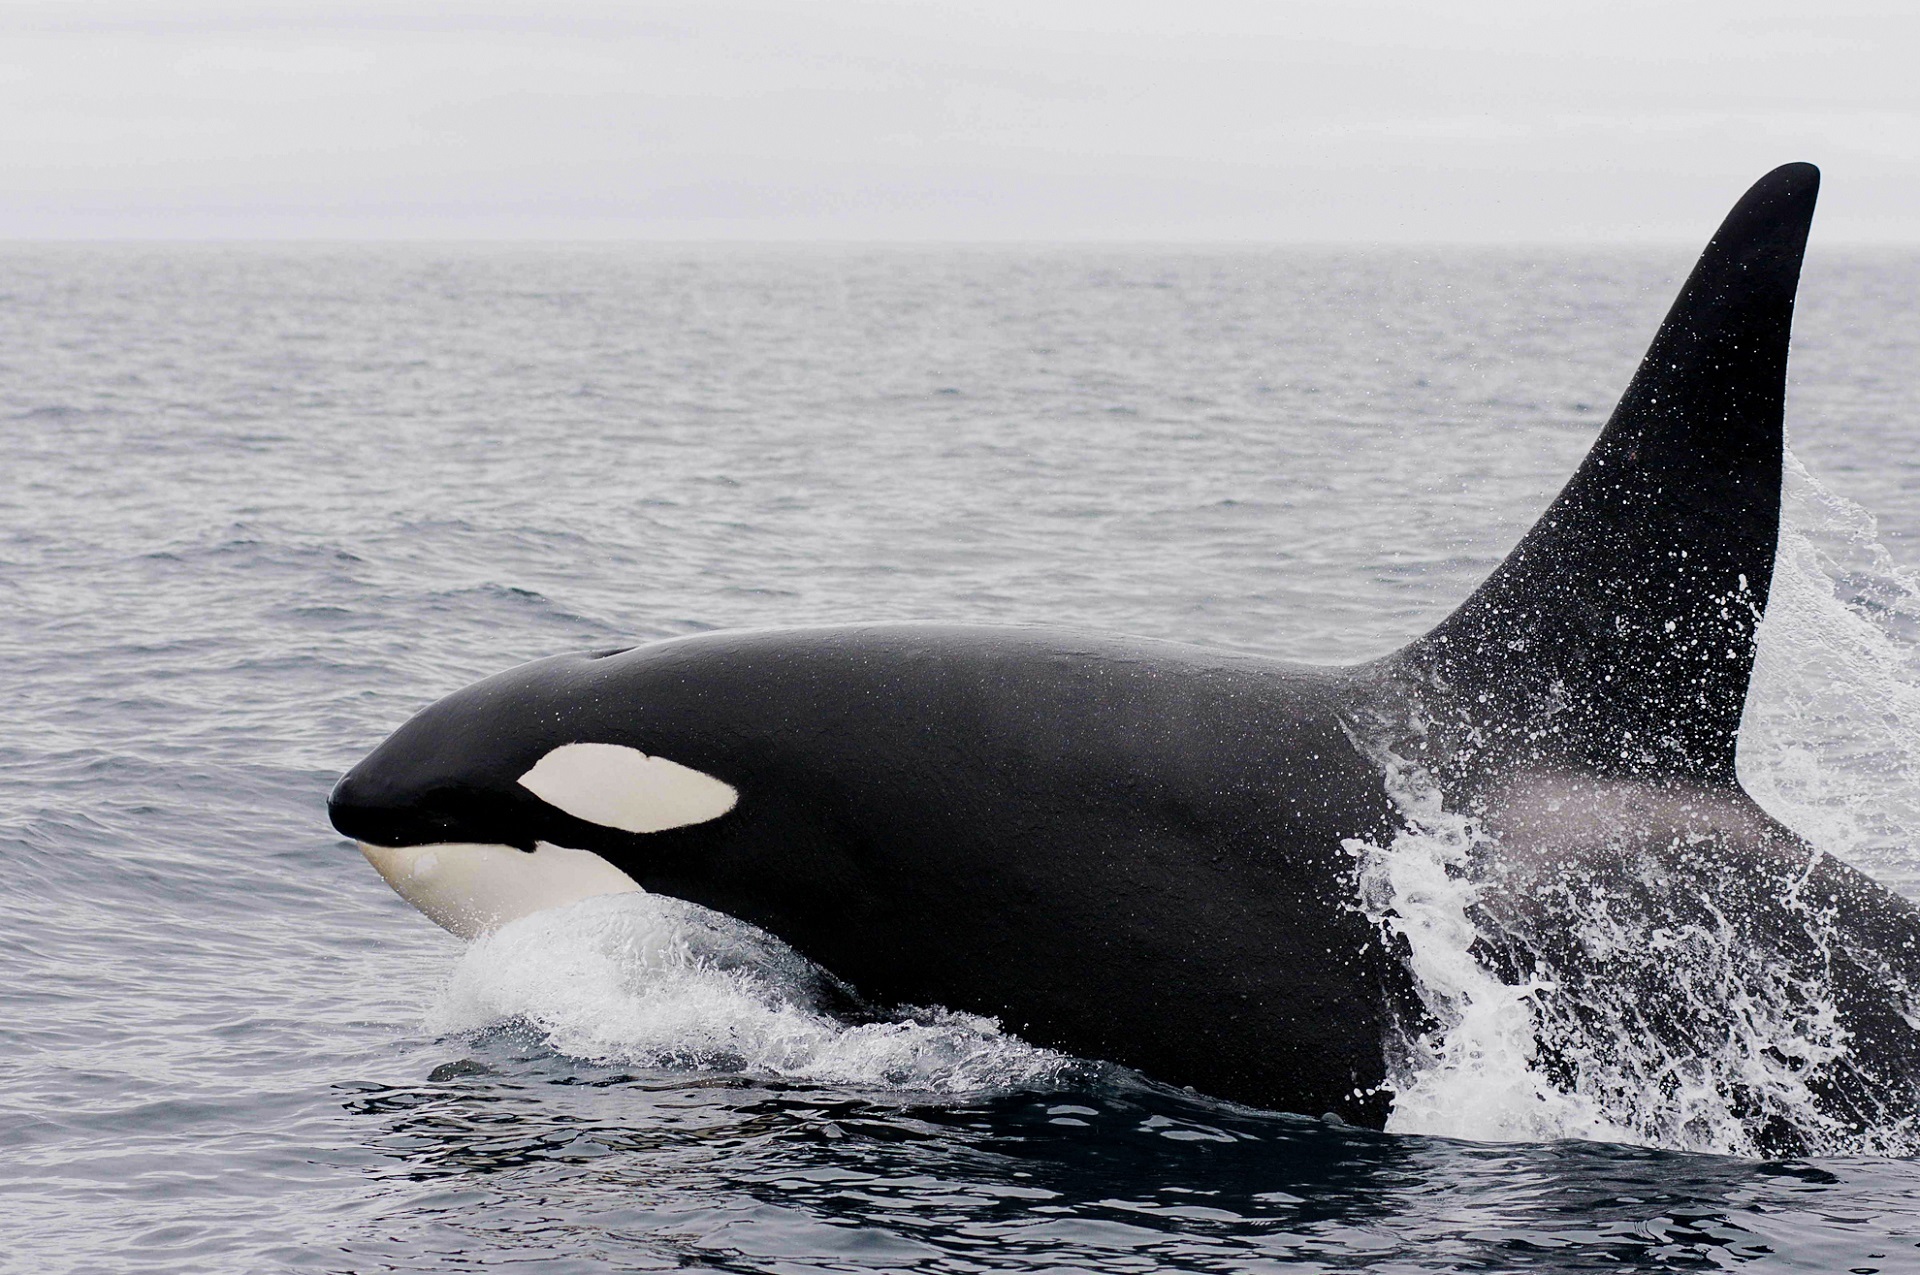 Killer Whale in Alaskan waters by skeeze